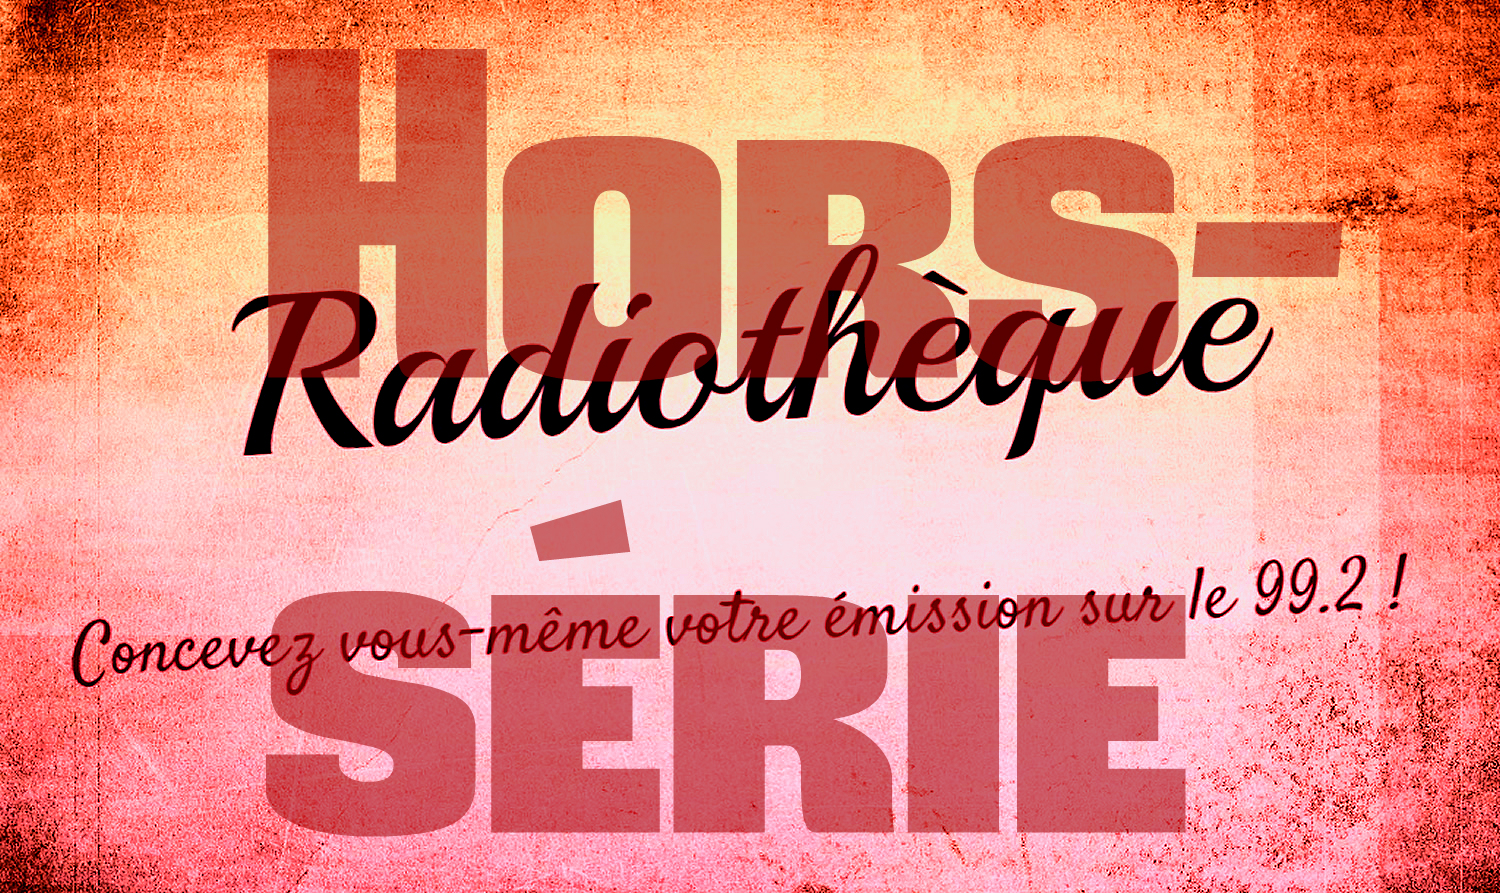 Radiothèque Hors Serie n°1 du 13 décembre 2016